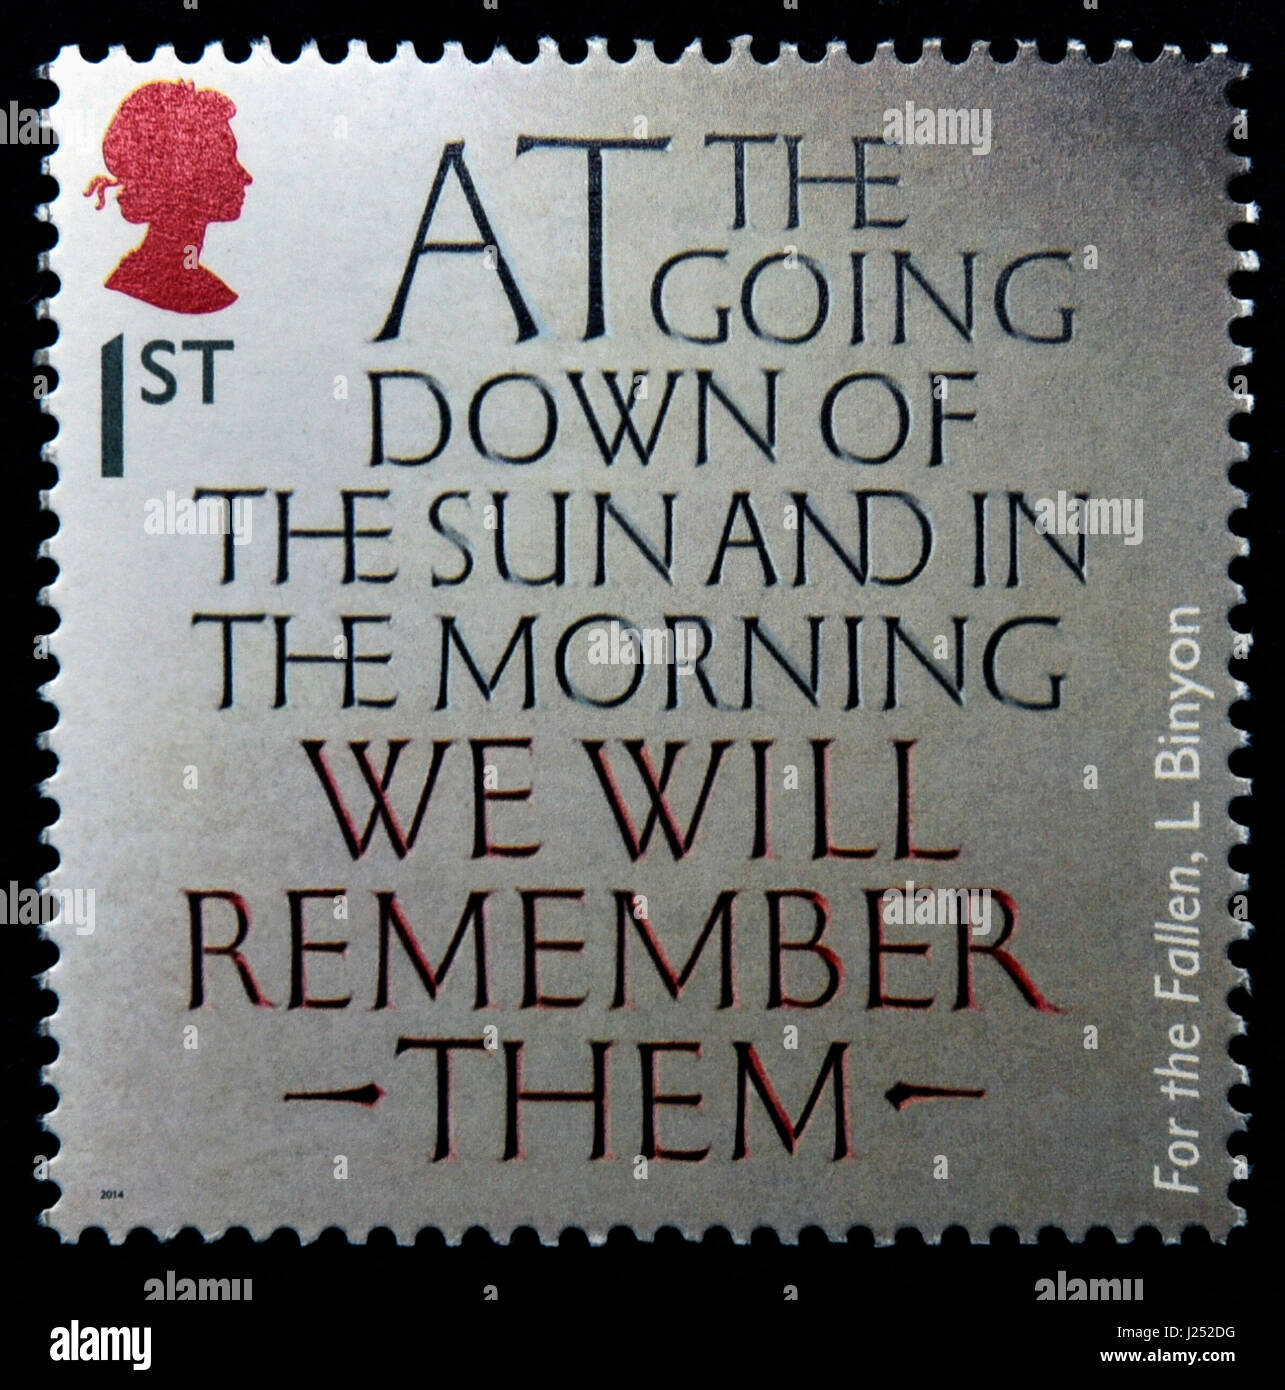 Briefmarke. Great Britain. Königin Elizabeth II. 2014. des ersten Weltkriegs 1914 Souvenirs. "Für die gefallenen Soldaten" von Laurence Binyon. Stockfoto